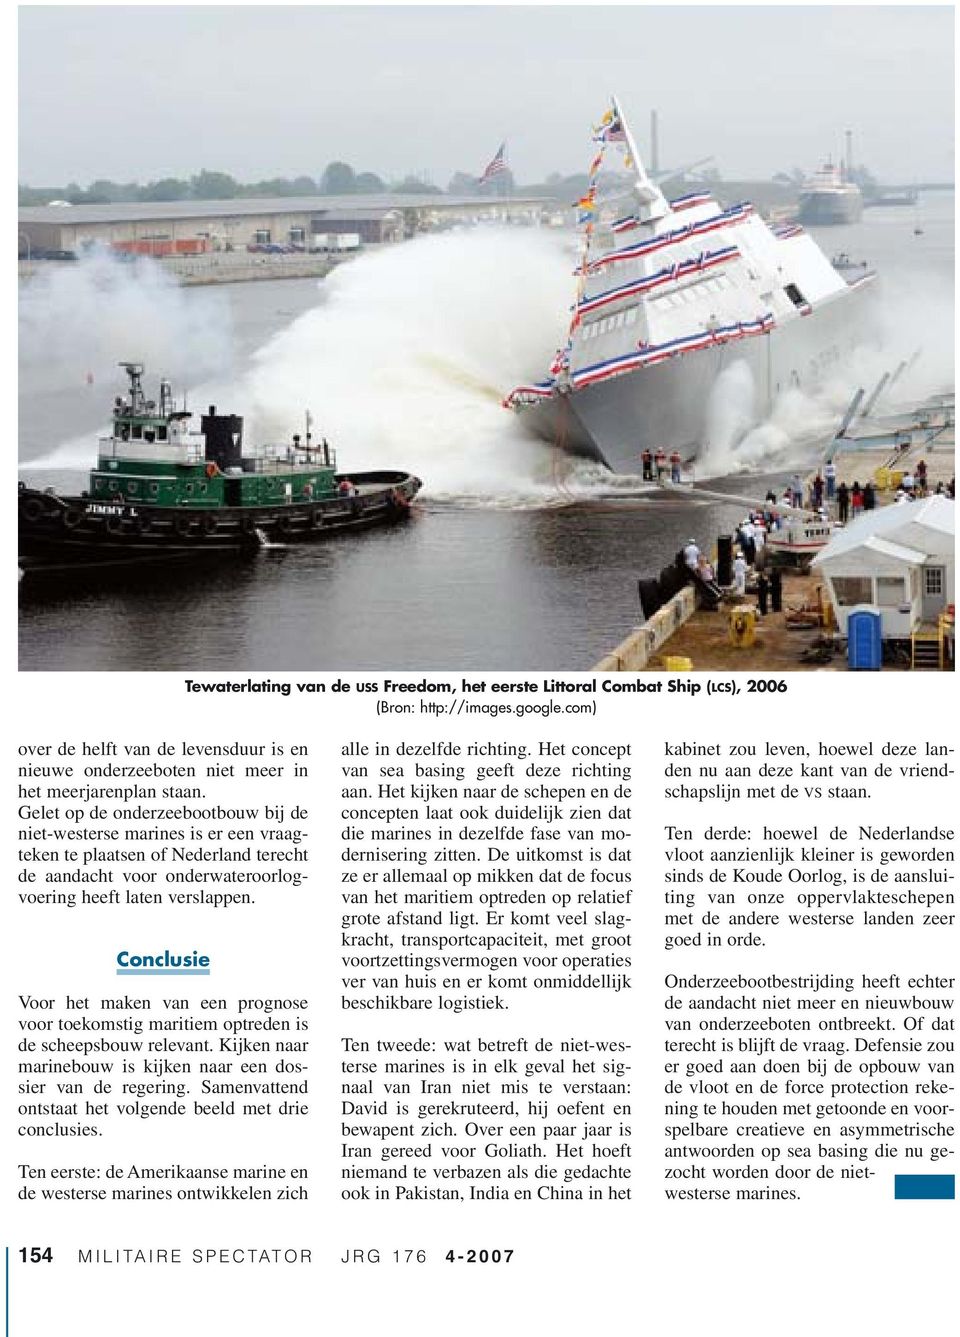 Gelet op de onderzeebootbouw bij de niet-westerse marines is er een vraagteken te plaatsen of Nederland terecht de aandacht voor onderwateroorlogvoering heeft laten verslappen.